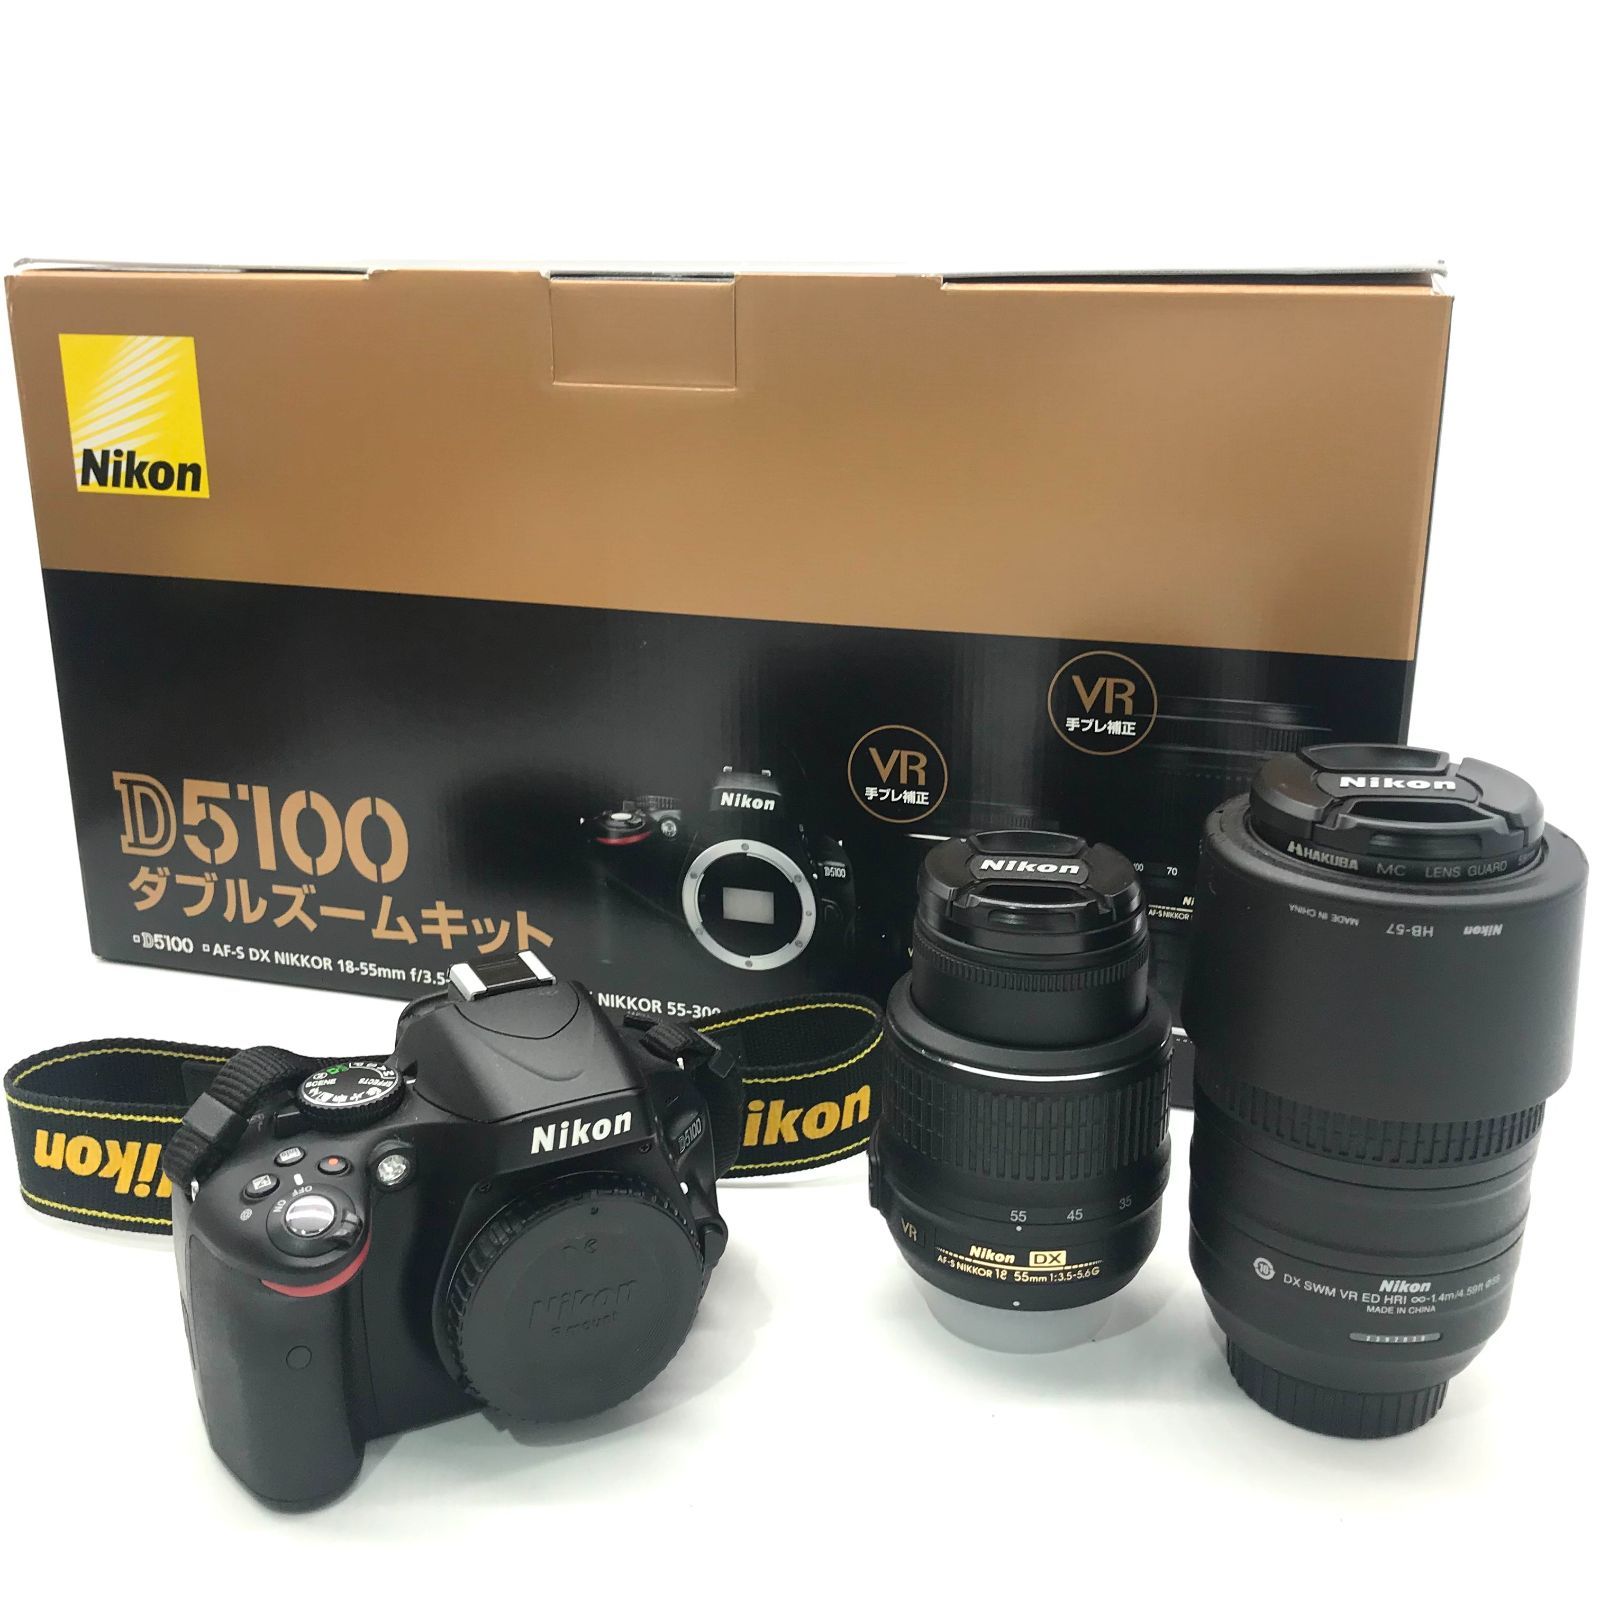 ▽【動作確認済】Nikon/ニコン 一眼レフカメラ D5100 ダブルズーム